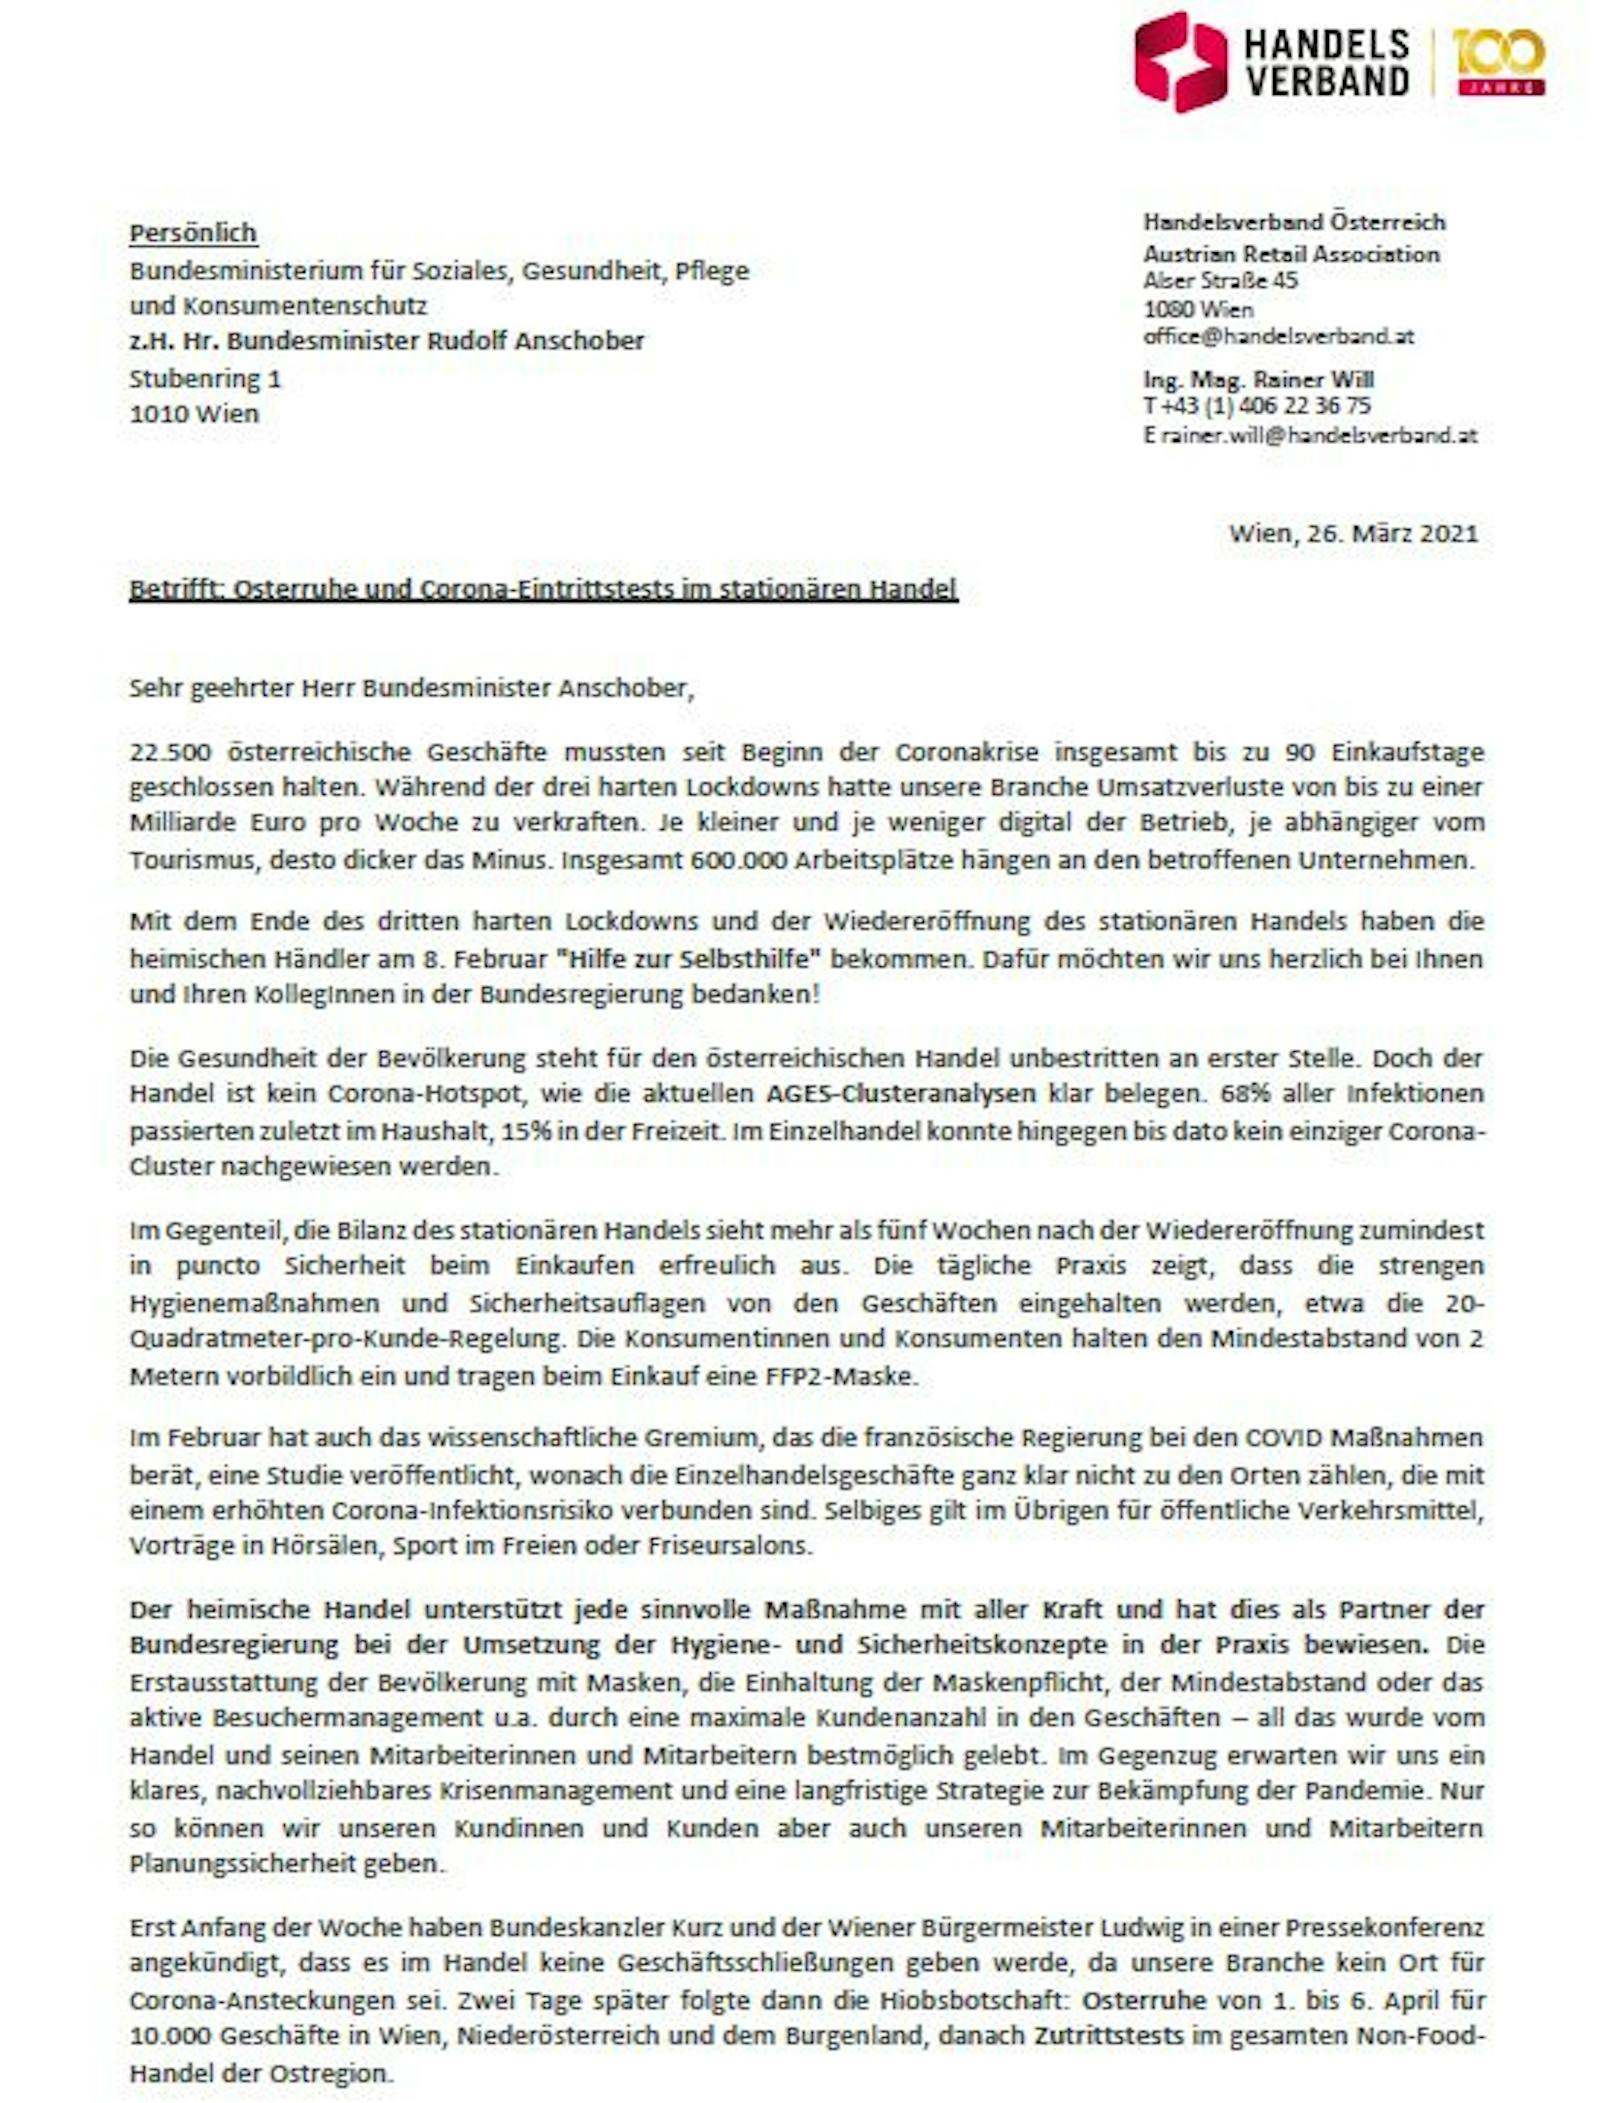 Der offene Brief des Handelsverbands an Gesundheitsminister Rudolf Anschober.